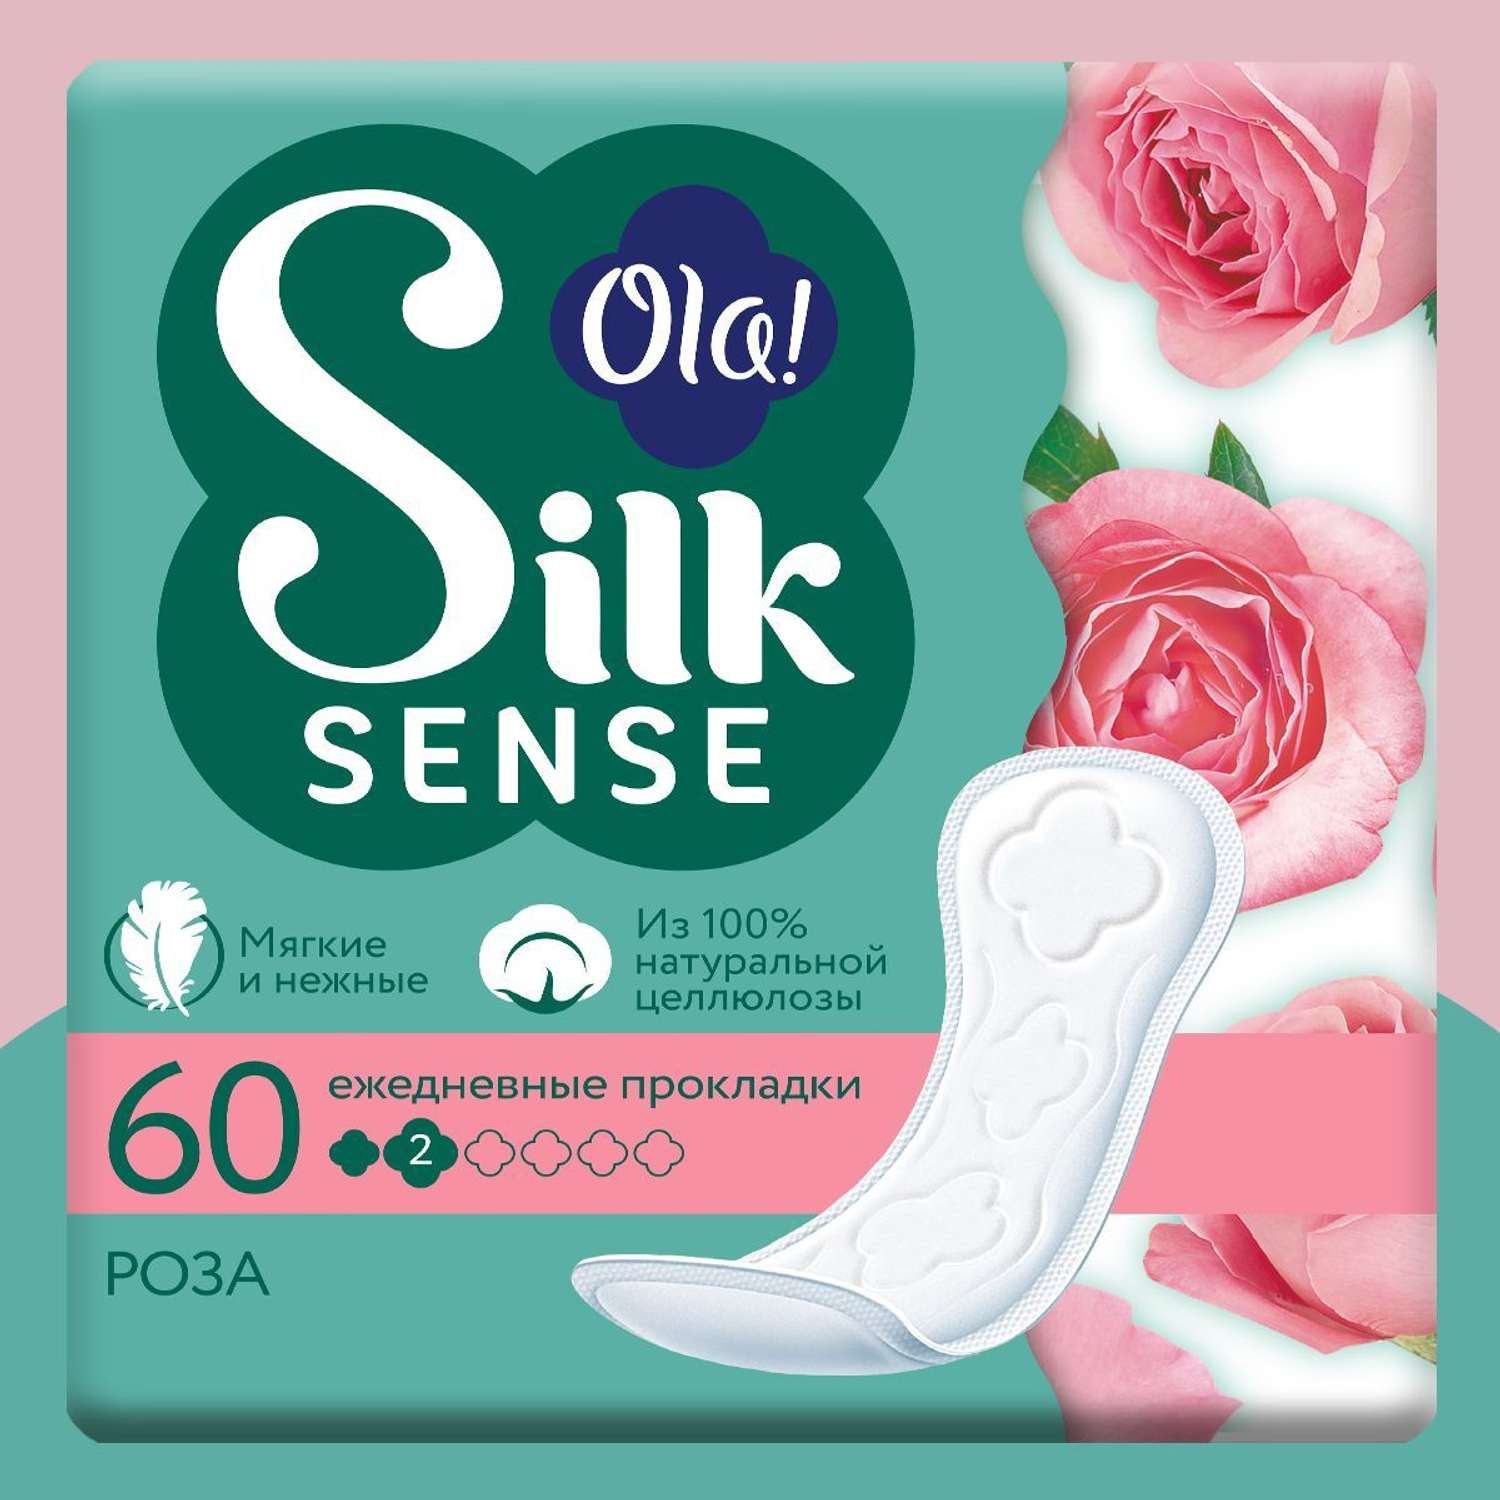 Ежедневные прокладки Ola! Silk Sense мягкие аромат Бархатная роза 60 шт - фото 1